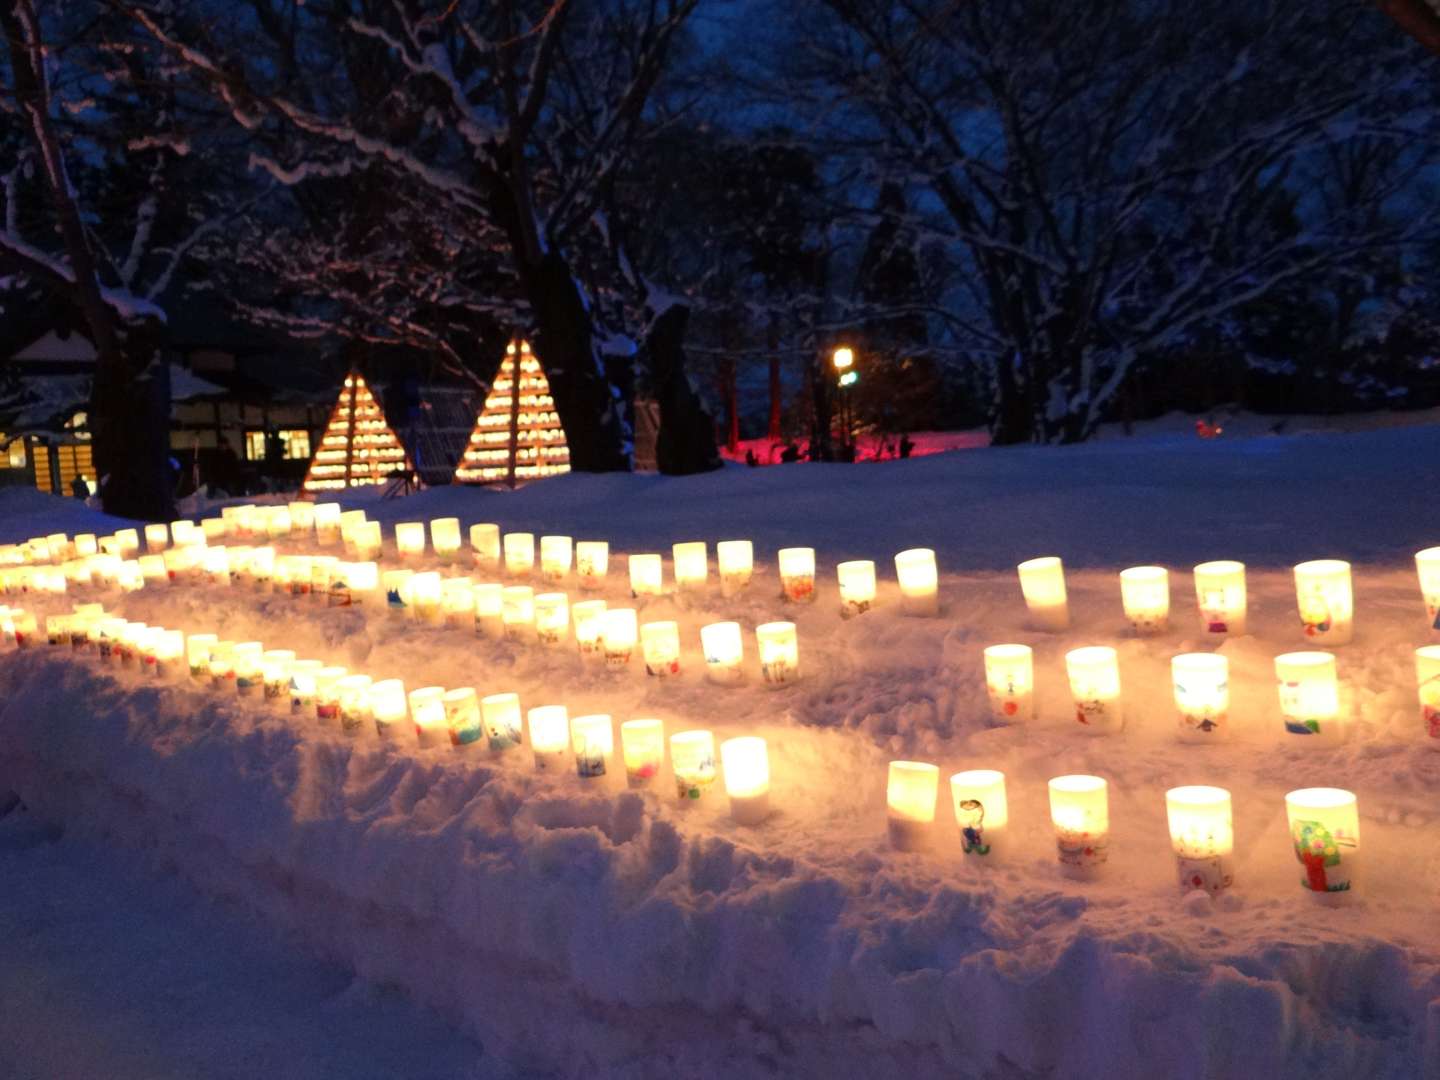 Aomori Schnee Festival